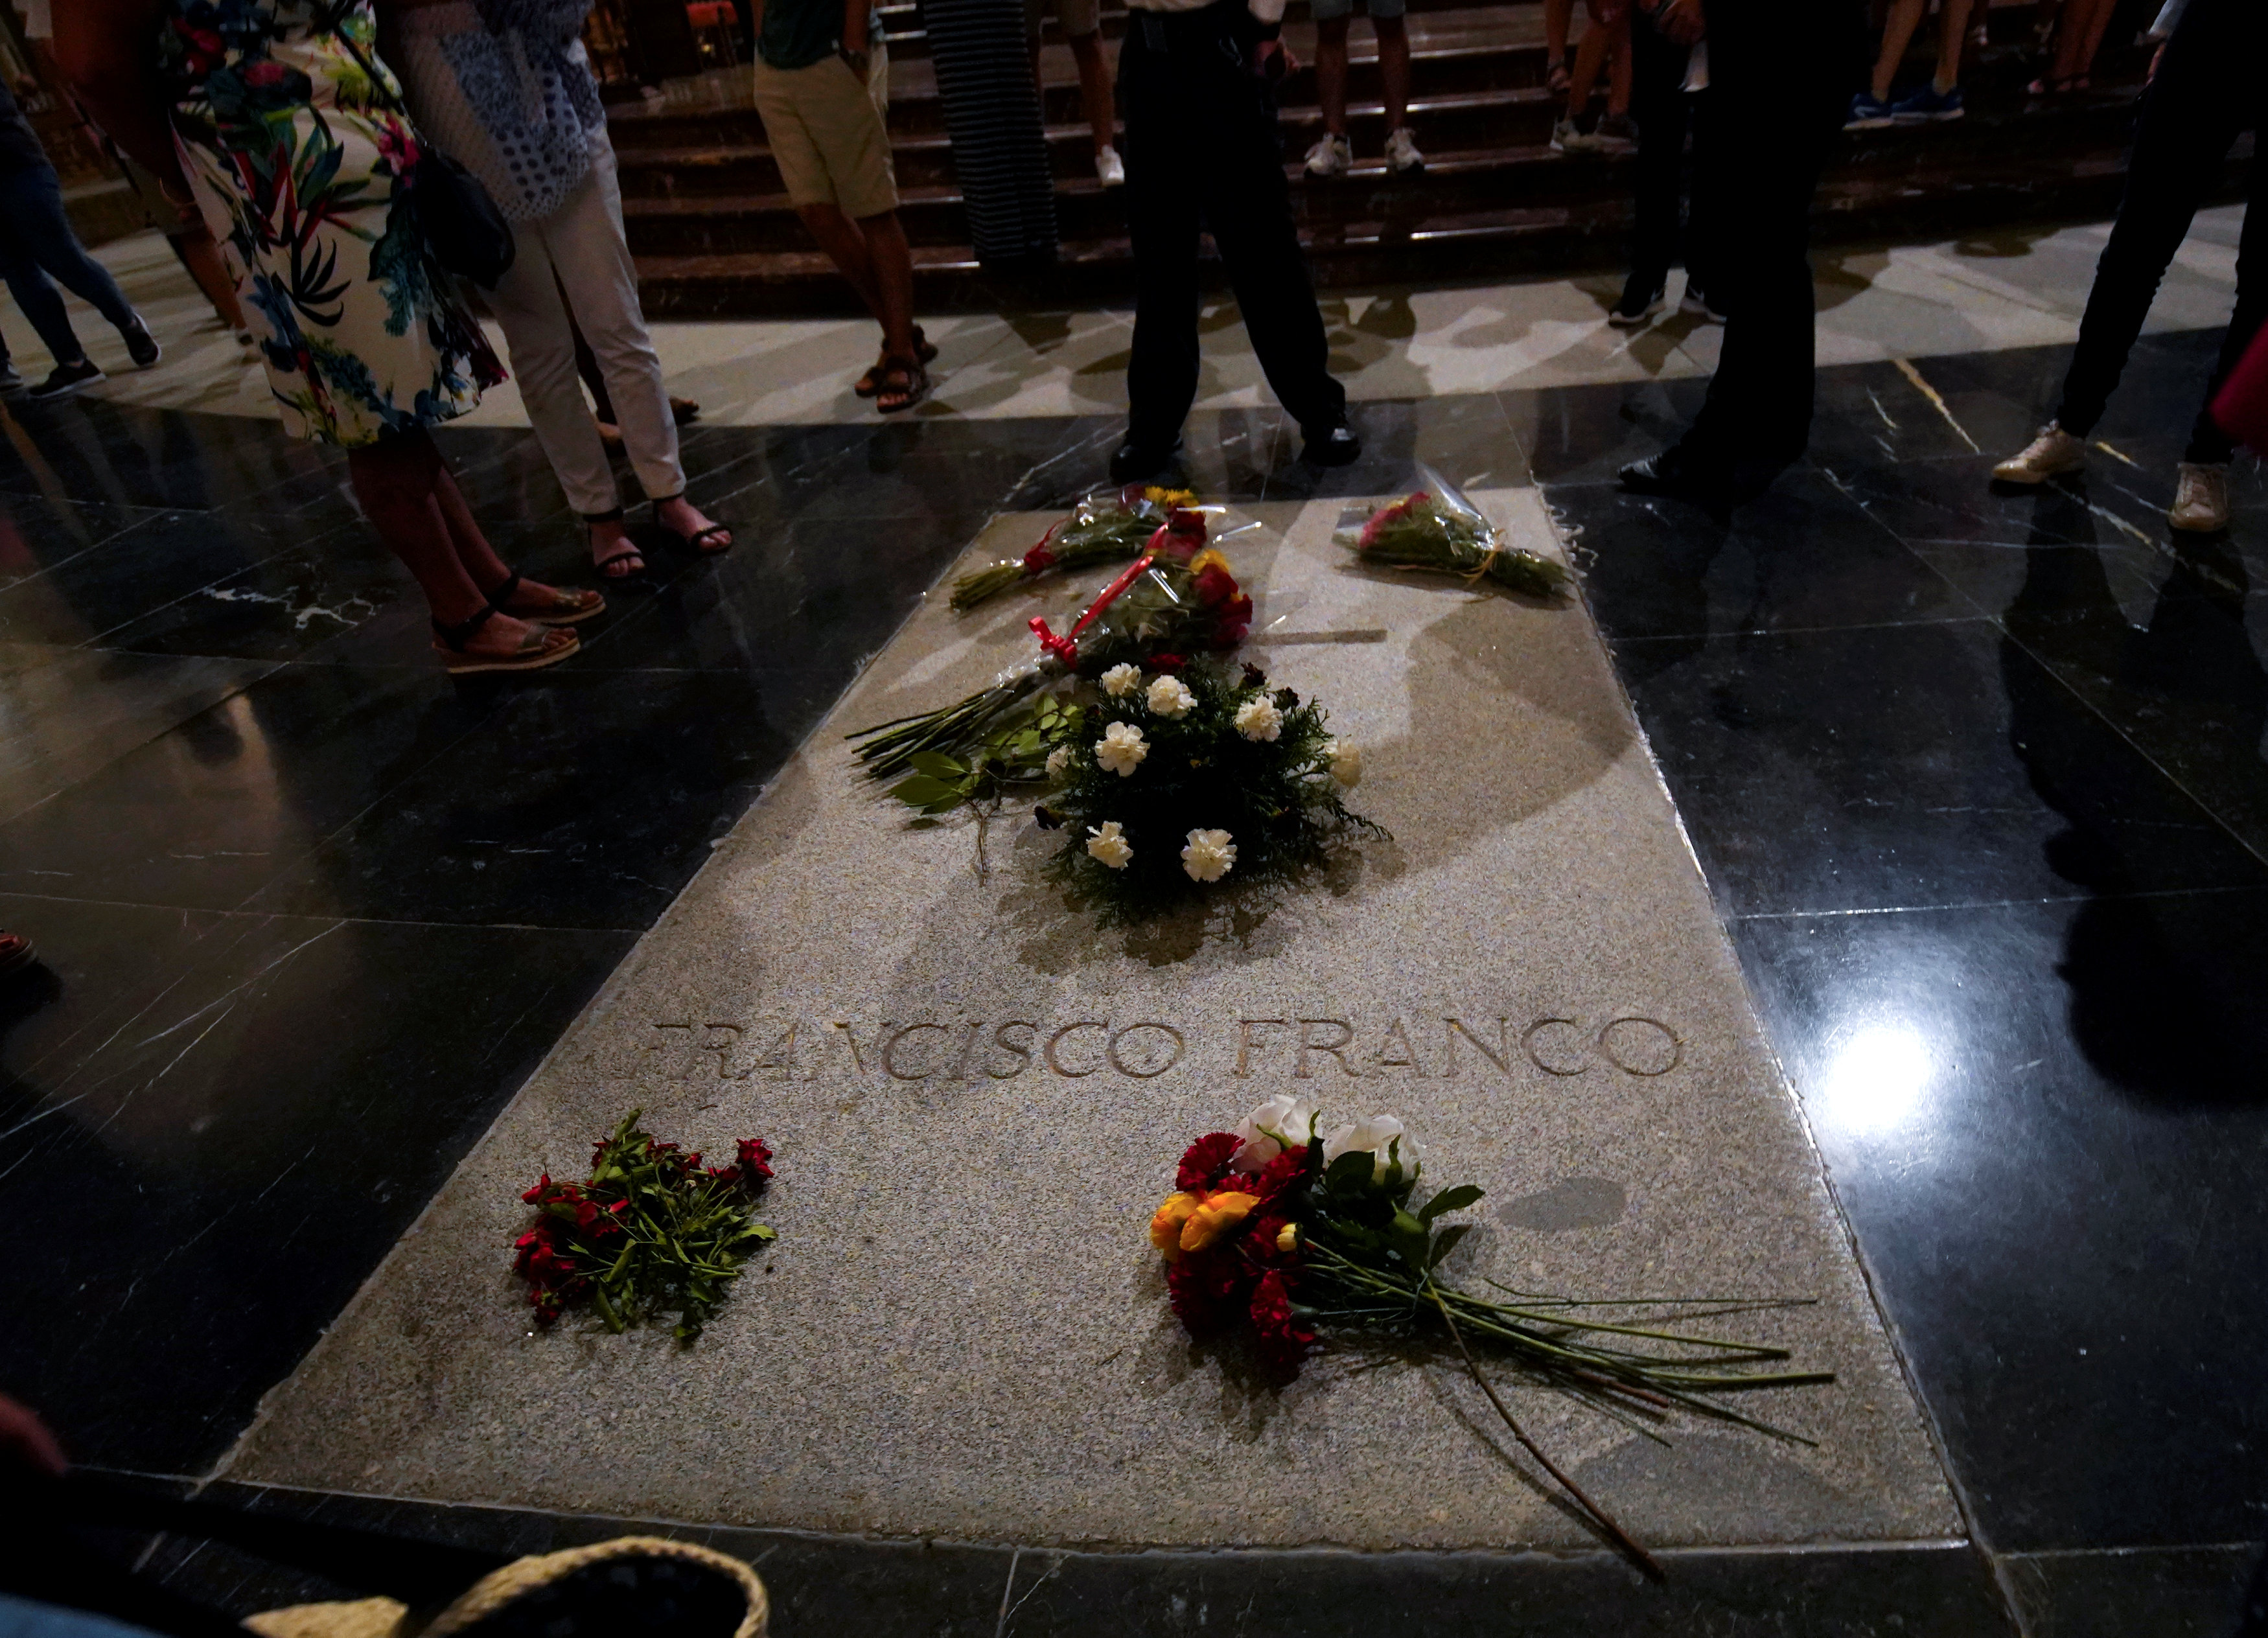 La exhumación de Franco será sin honores militares, dice el Gobierno español